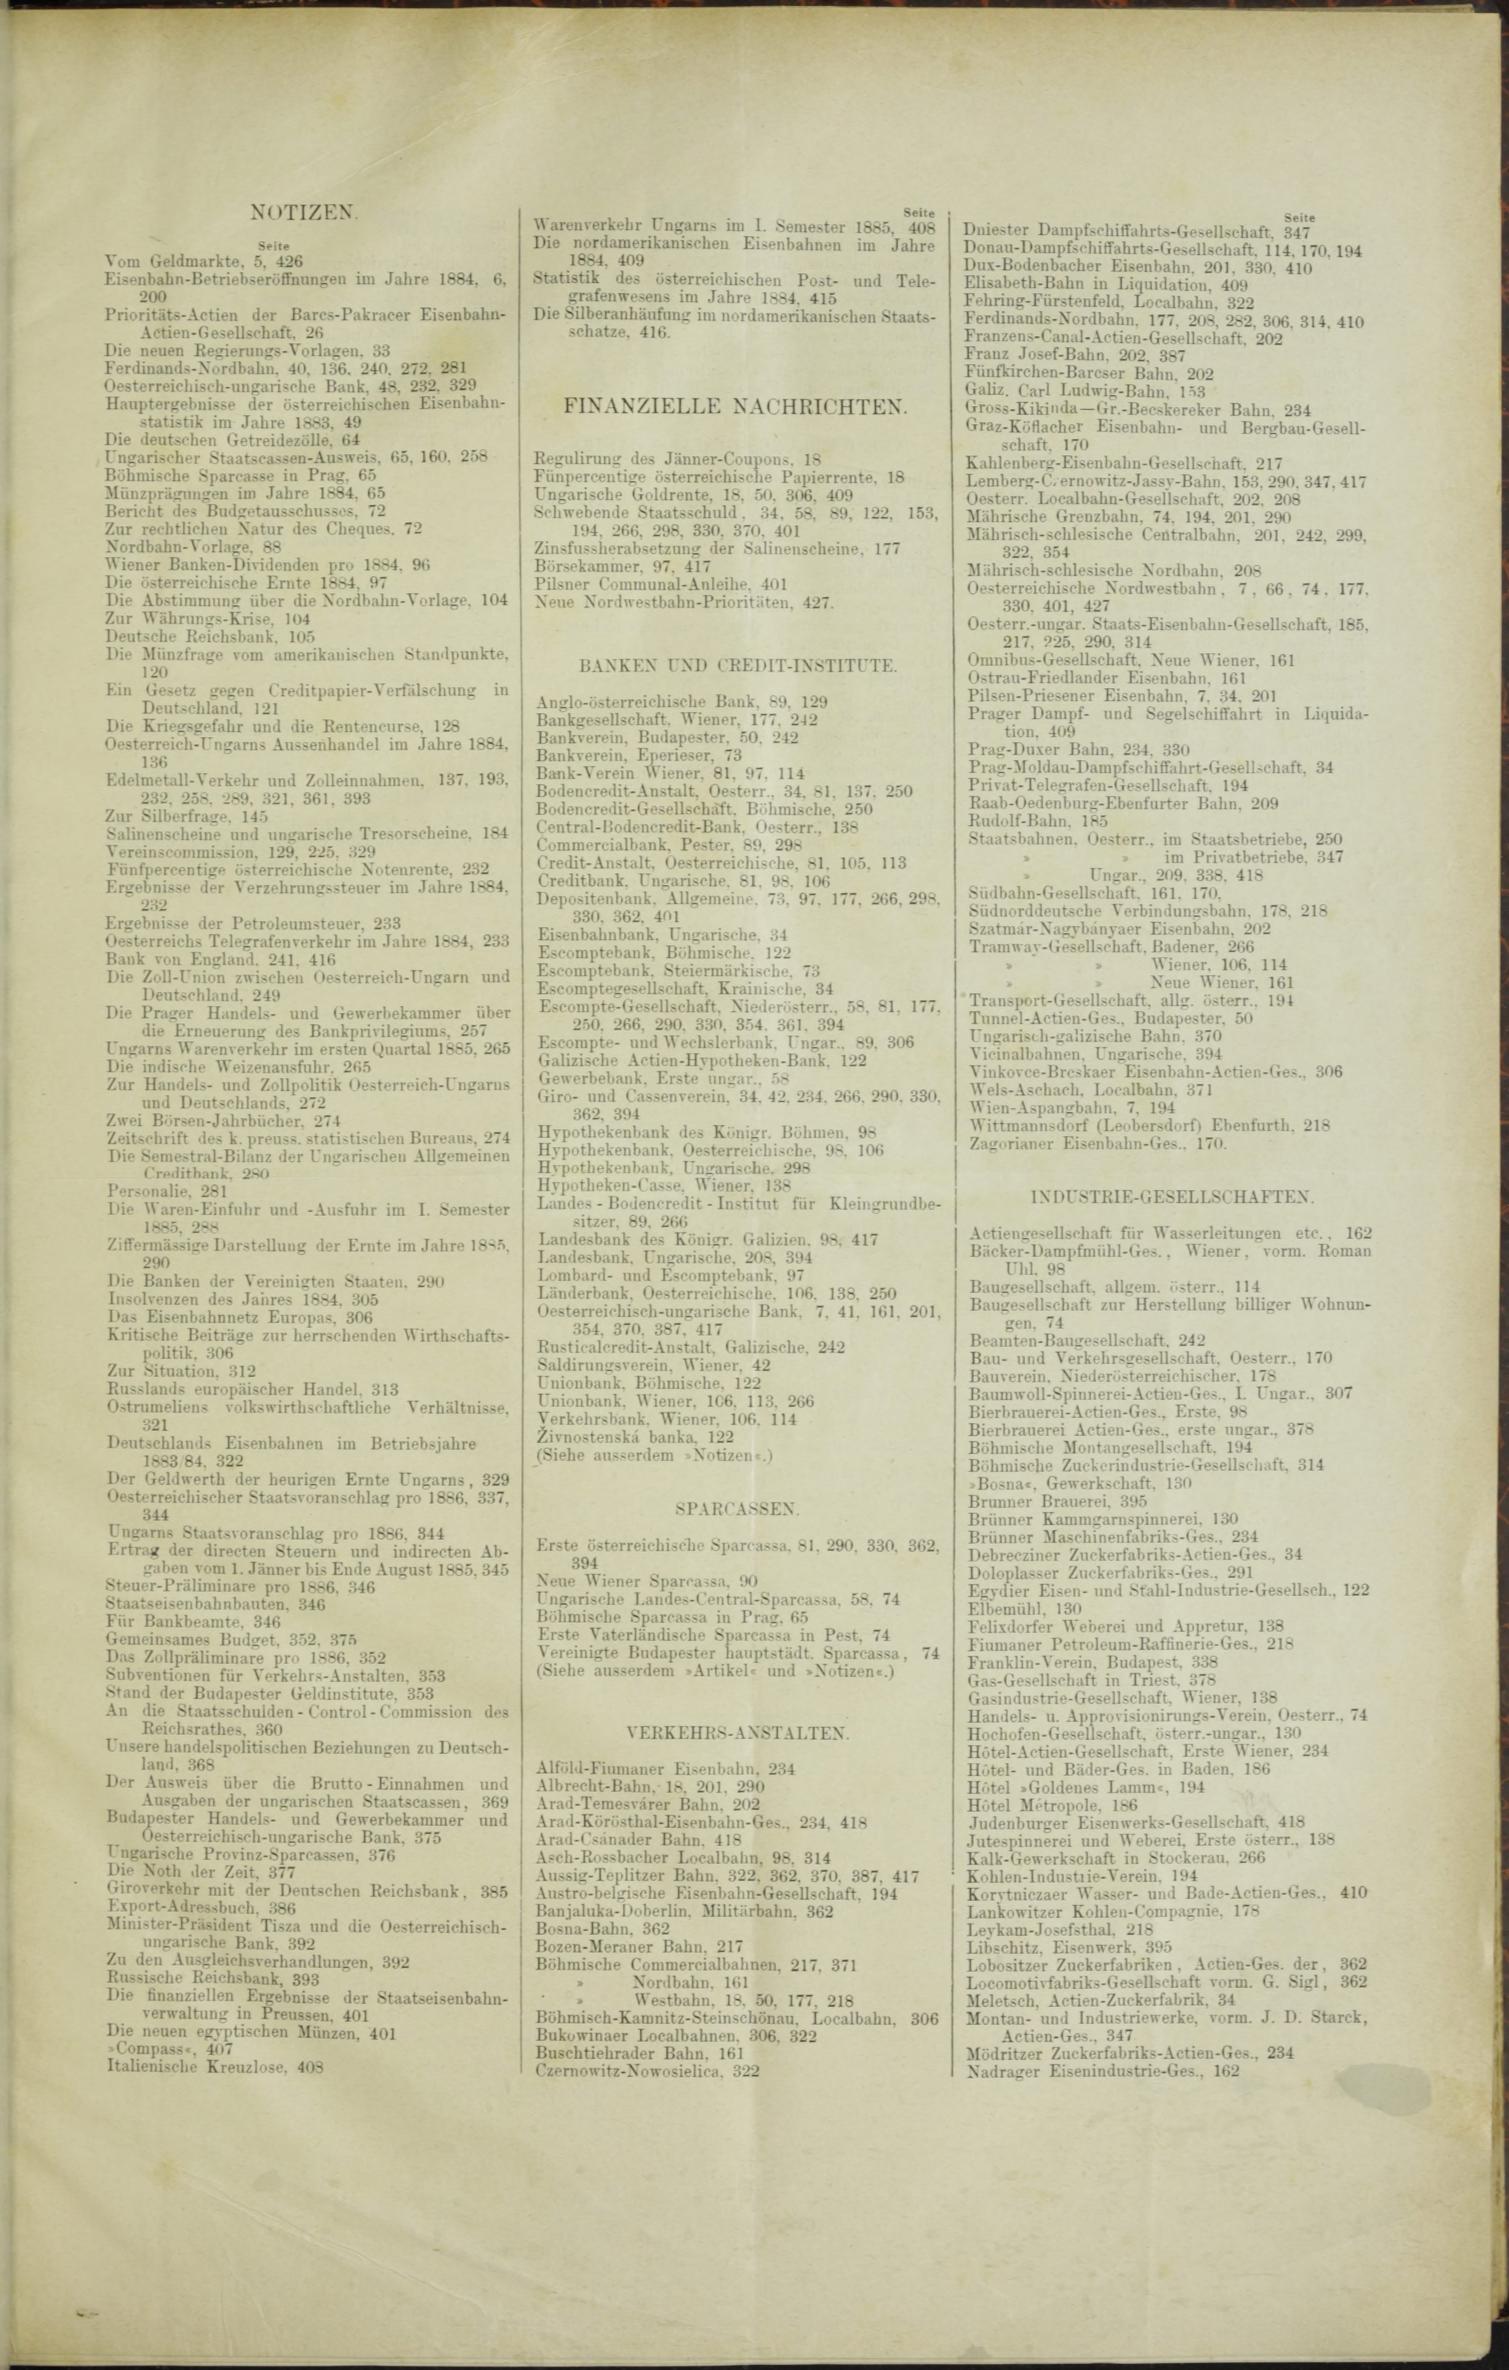 Der Tresor 12.02.1885 - Seite 11